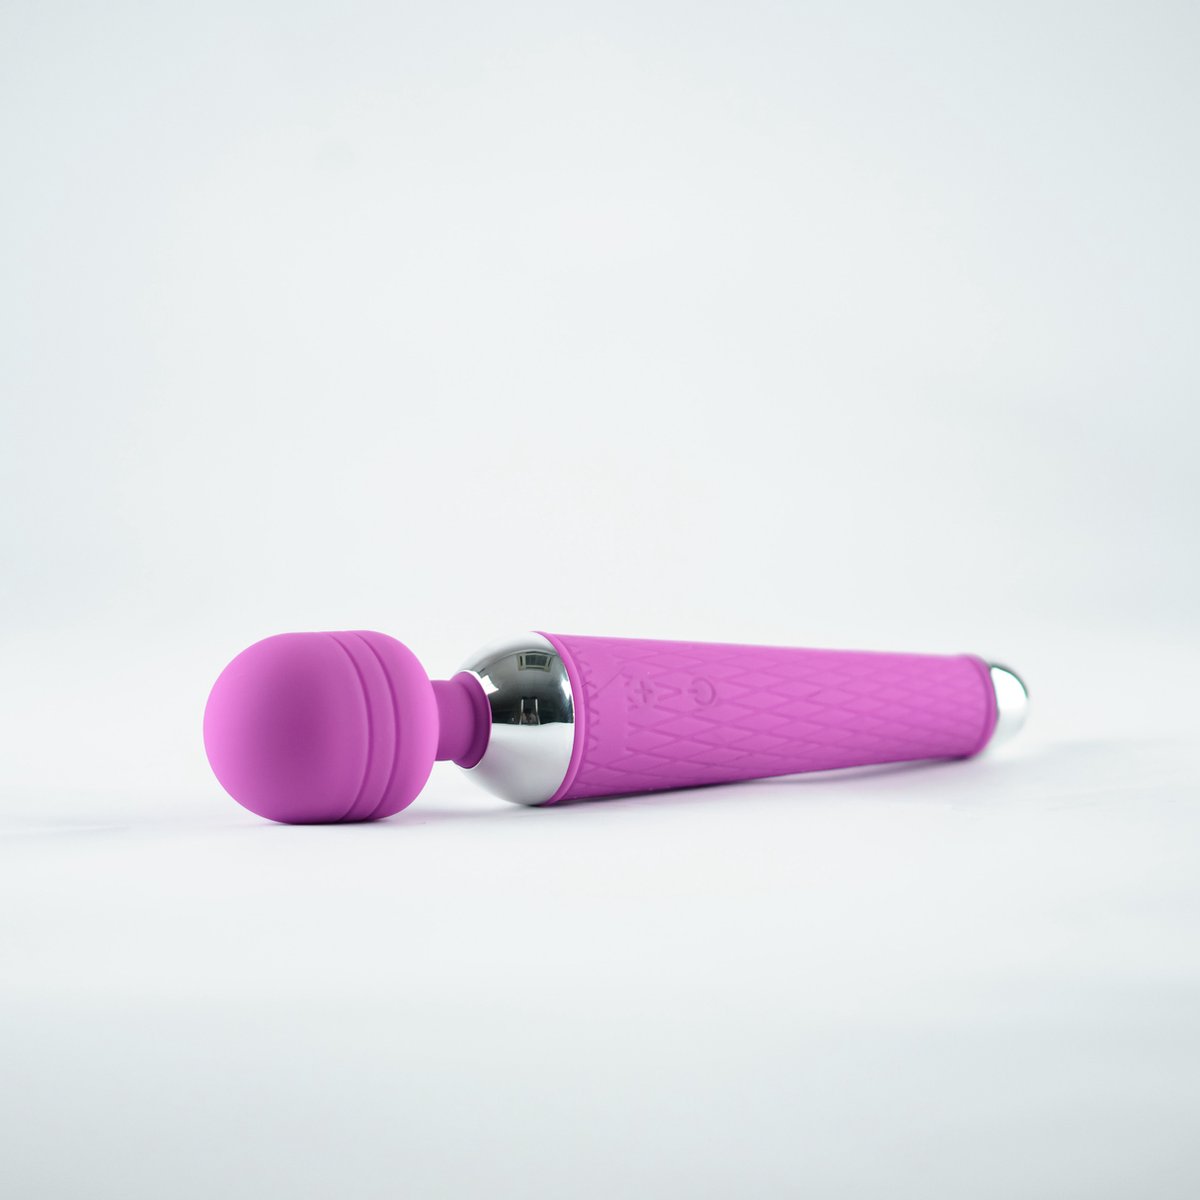 SEVEX - Vibrator - Clitoris Stimulator - Fluisterstil - Vibrators voor Vrouwen en koppels - Erotiek - Seksspeeltjes - Sex toys voor Vrouwen - Cadeau voor Vrouw